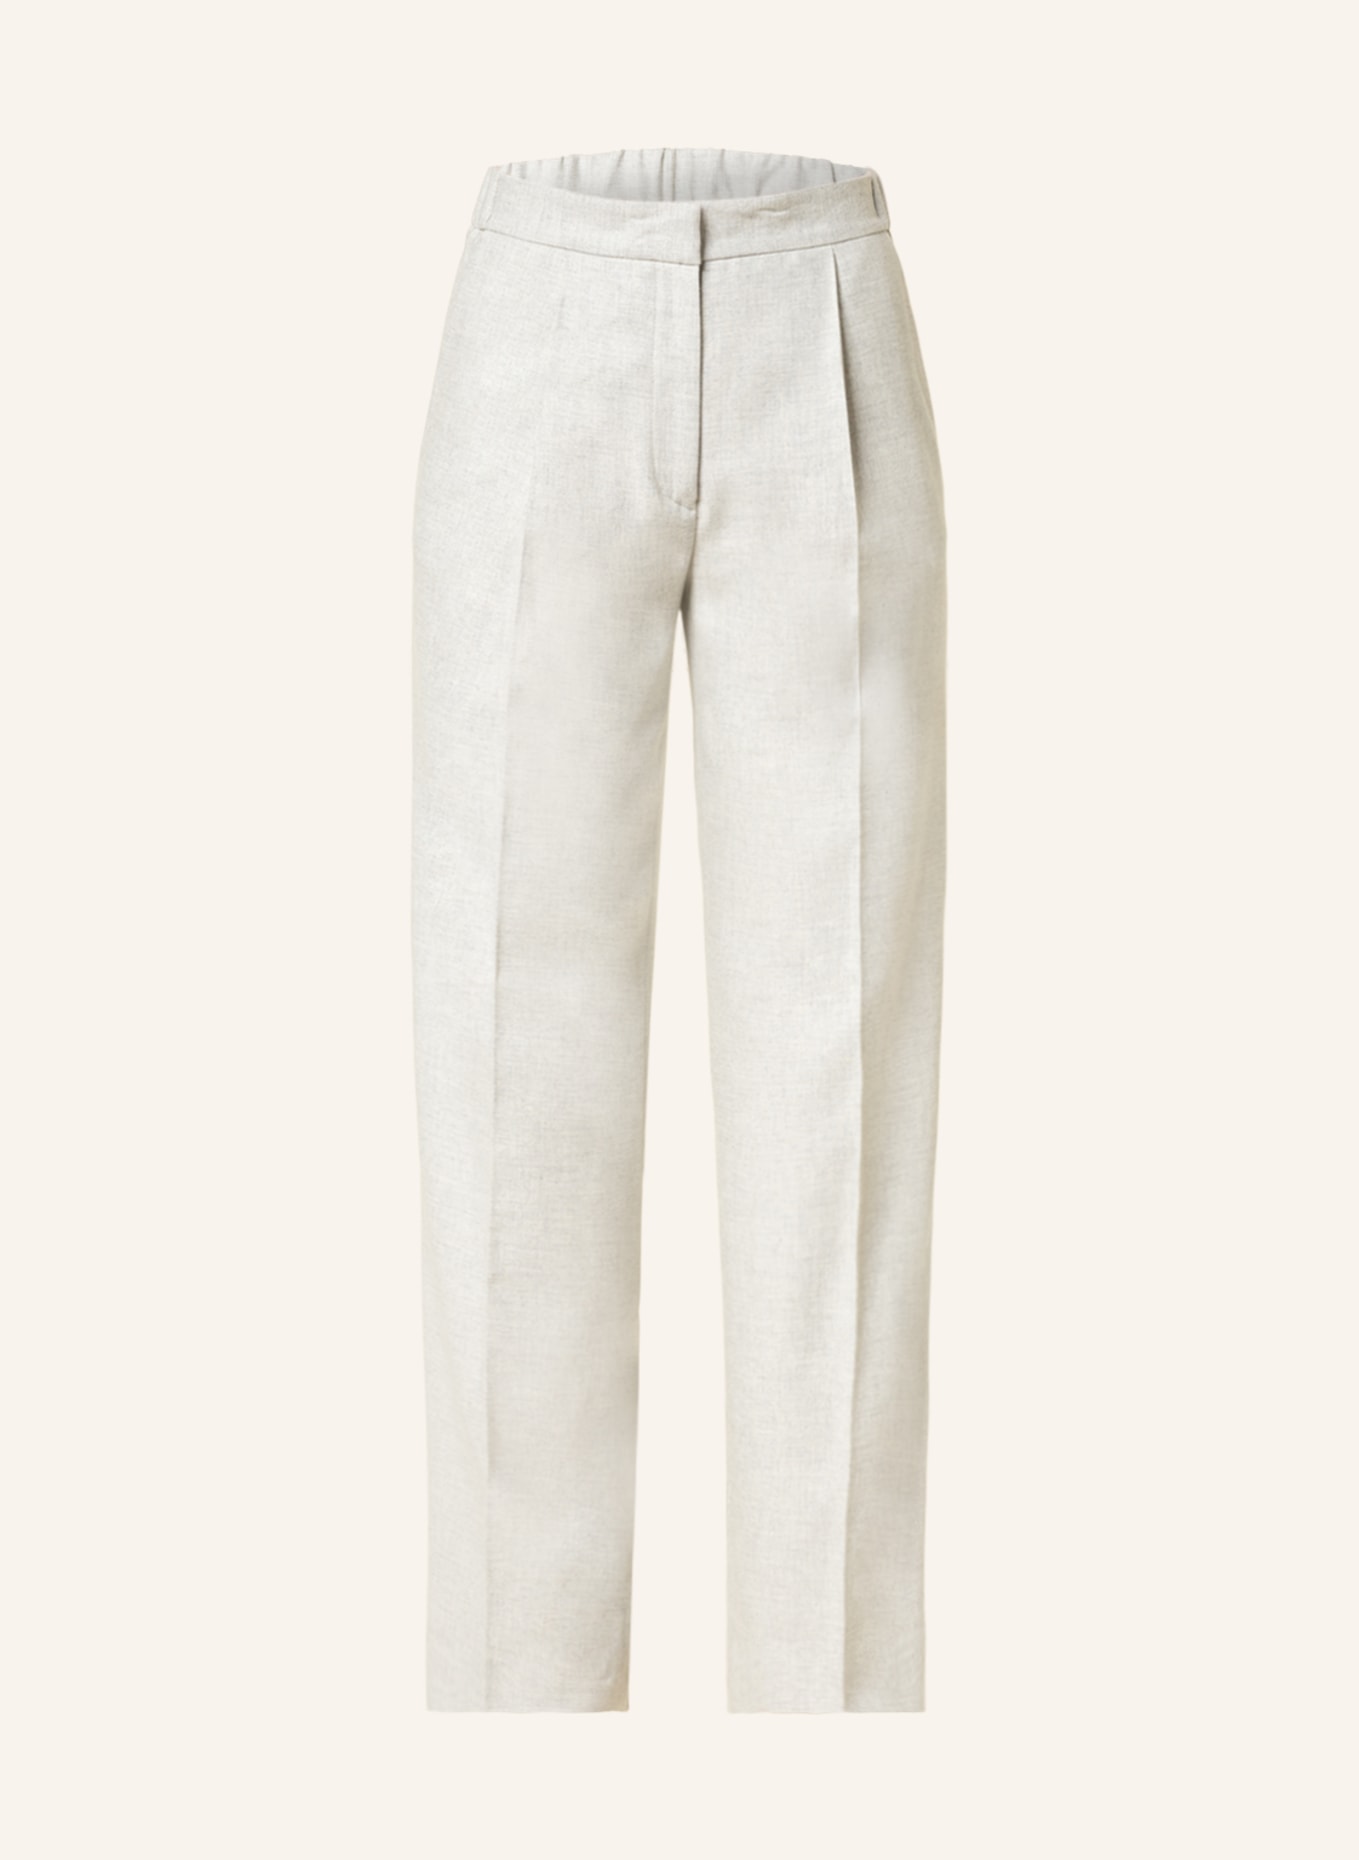 ANTONELLI firenze Trousers SILVIO, Color: LIGHT GRAY (Image 1)